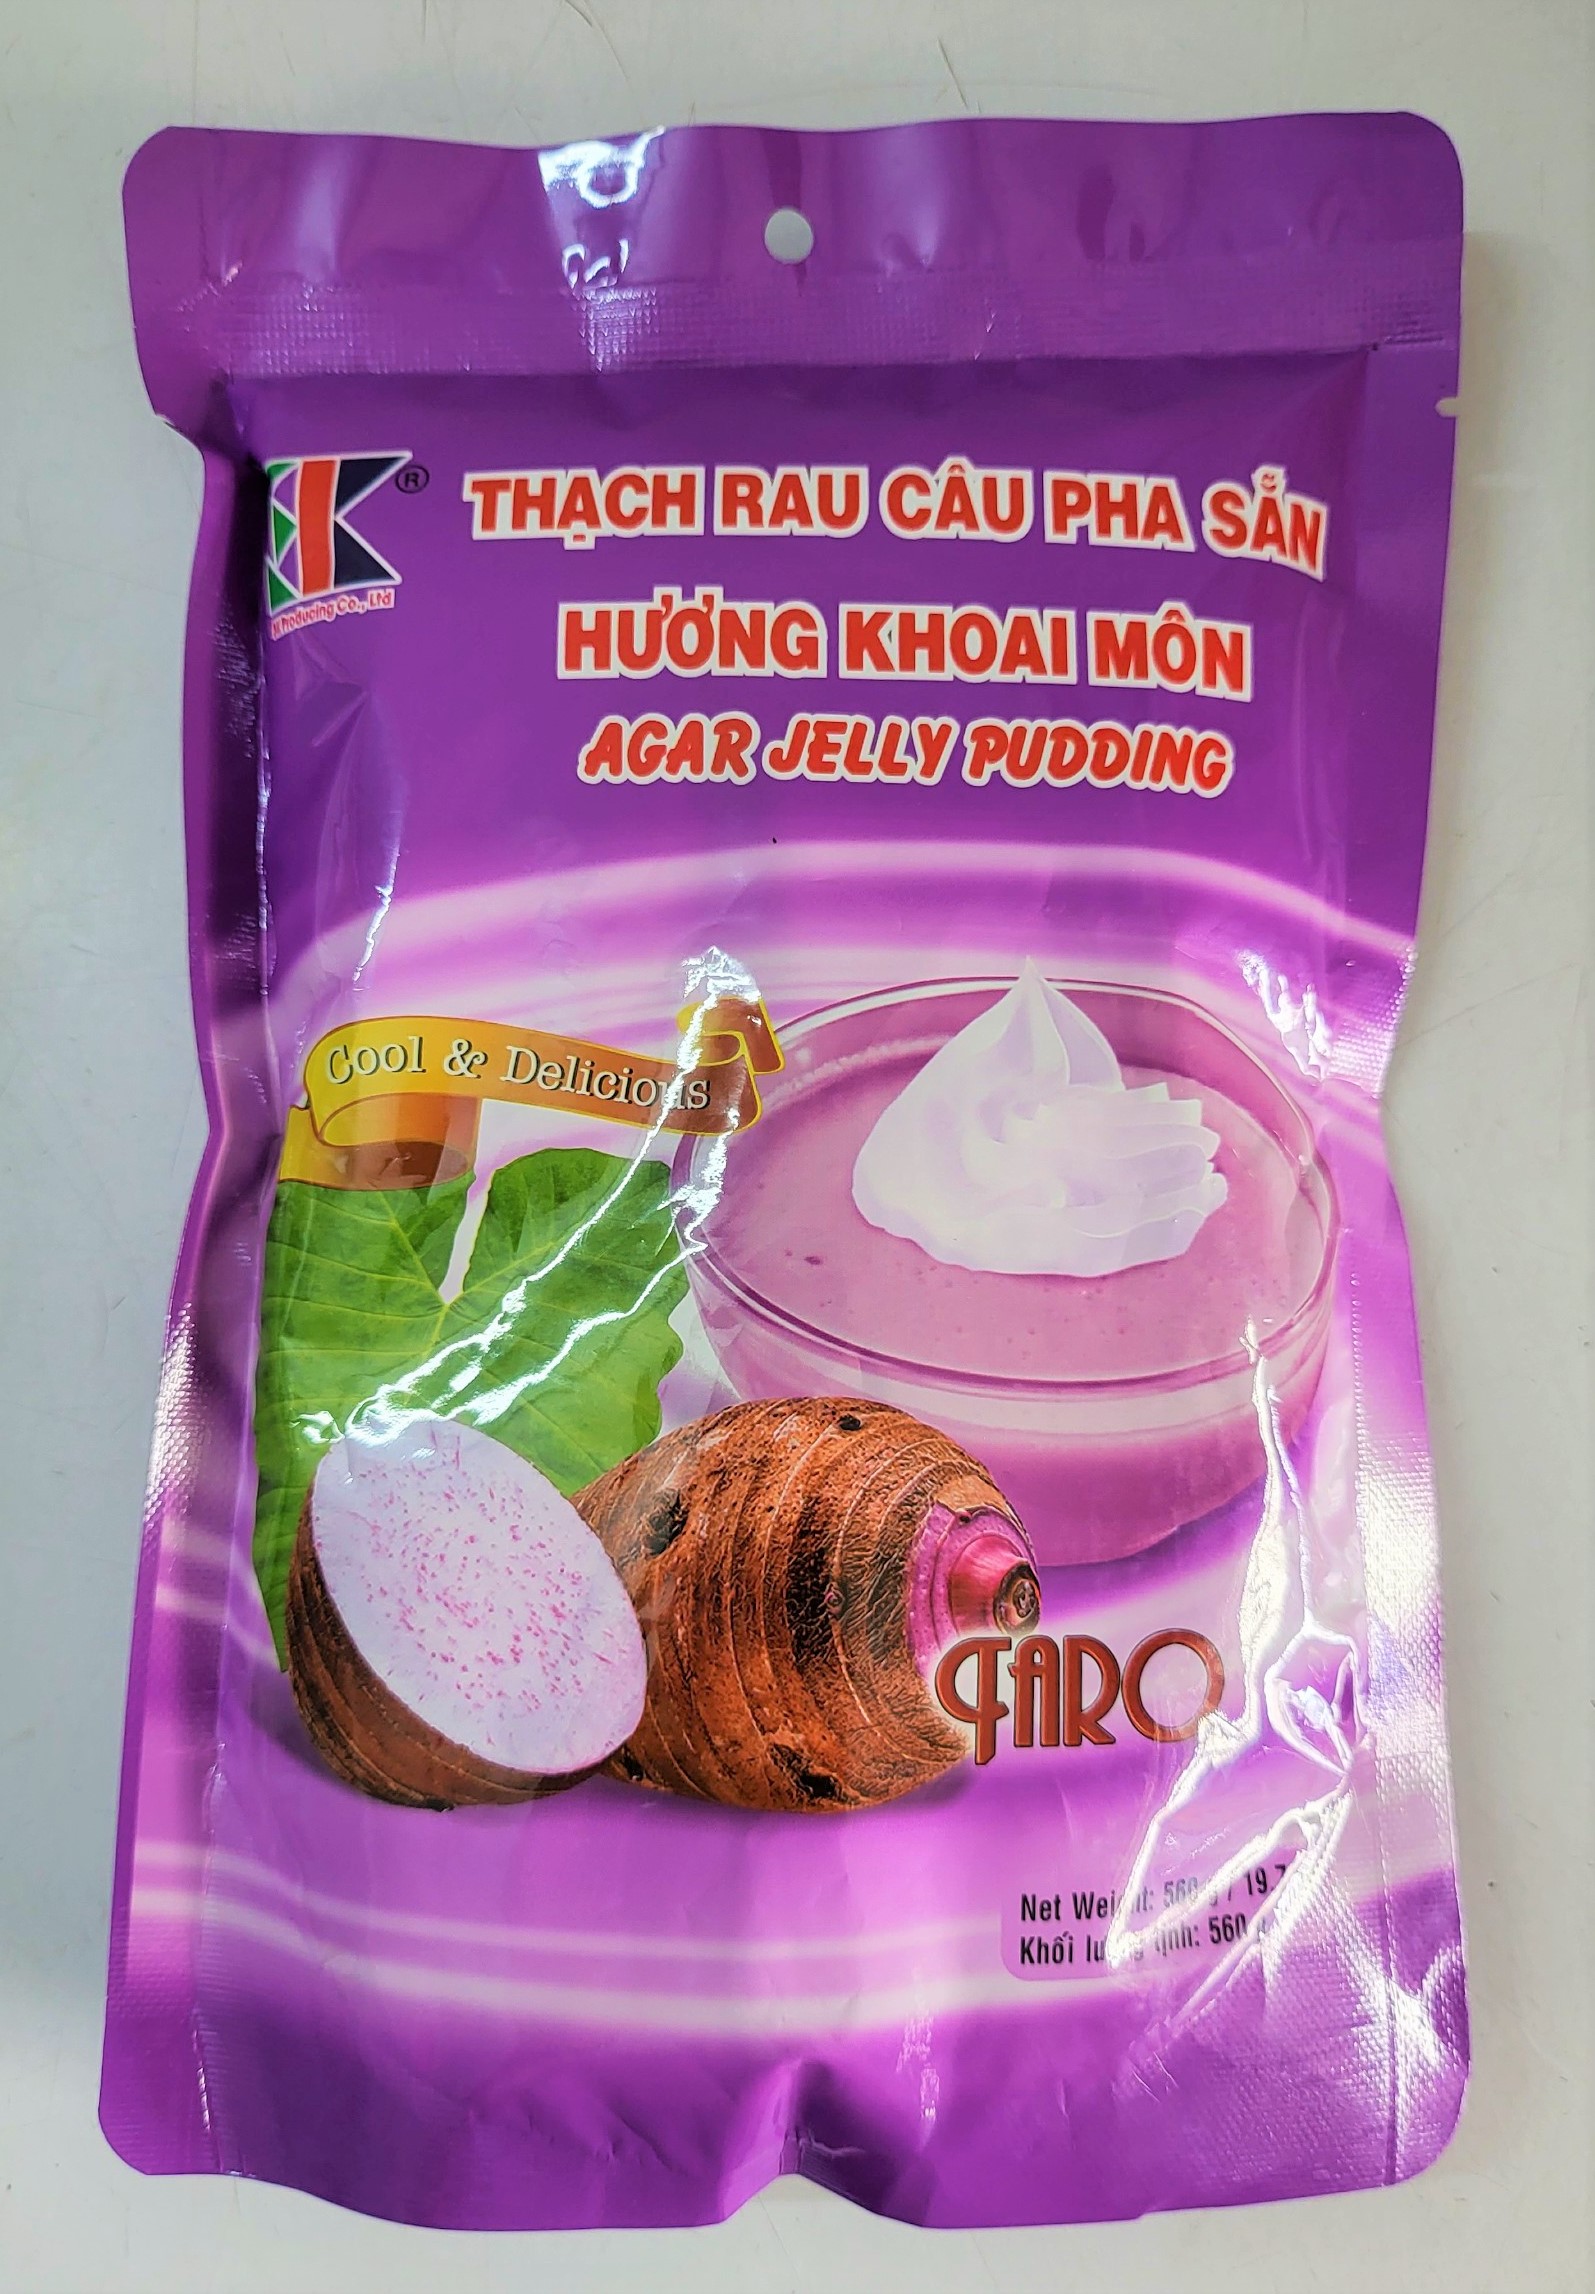 Túi lớn 560g KHOAI MÔN  BỘT THẠCH RAU CÂU PHA SẴN VN 3K Agar Jelly Pudding